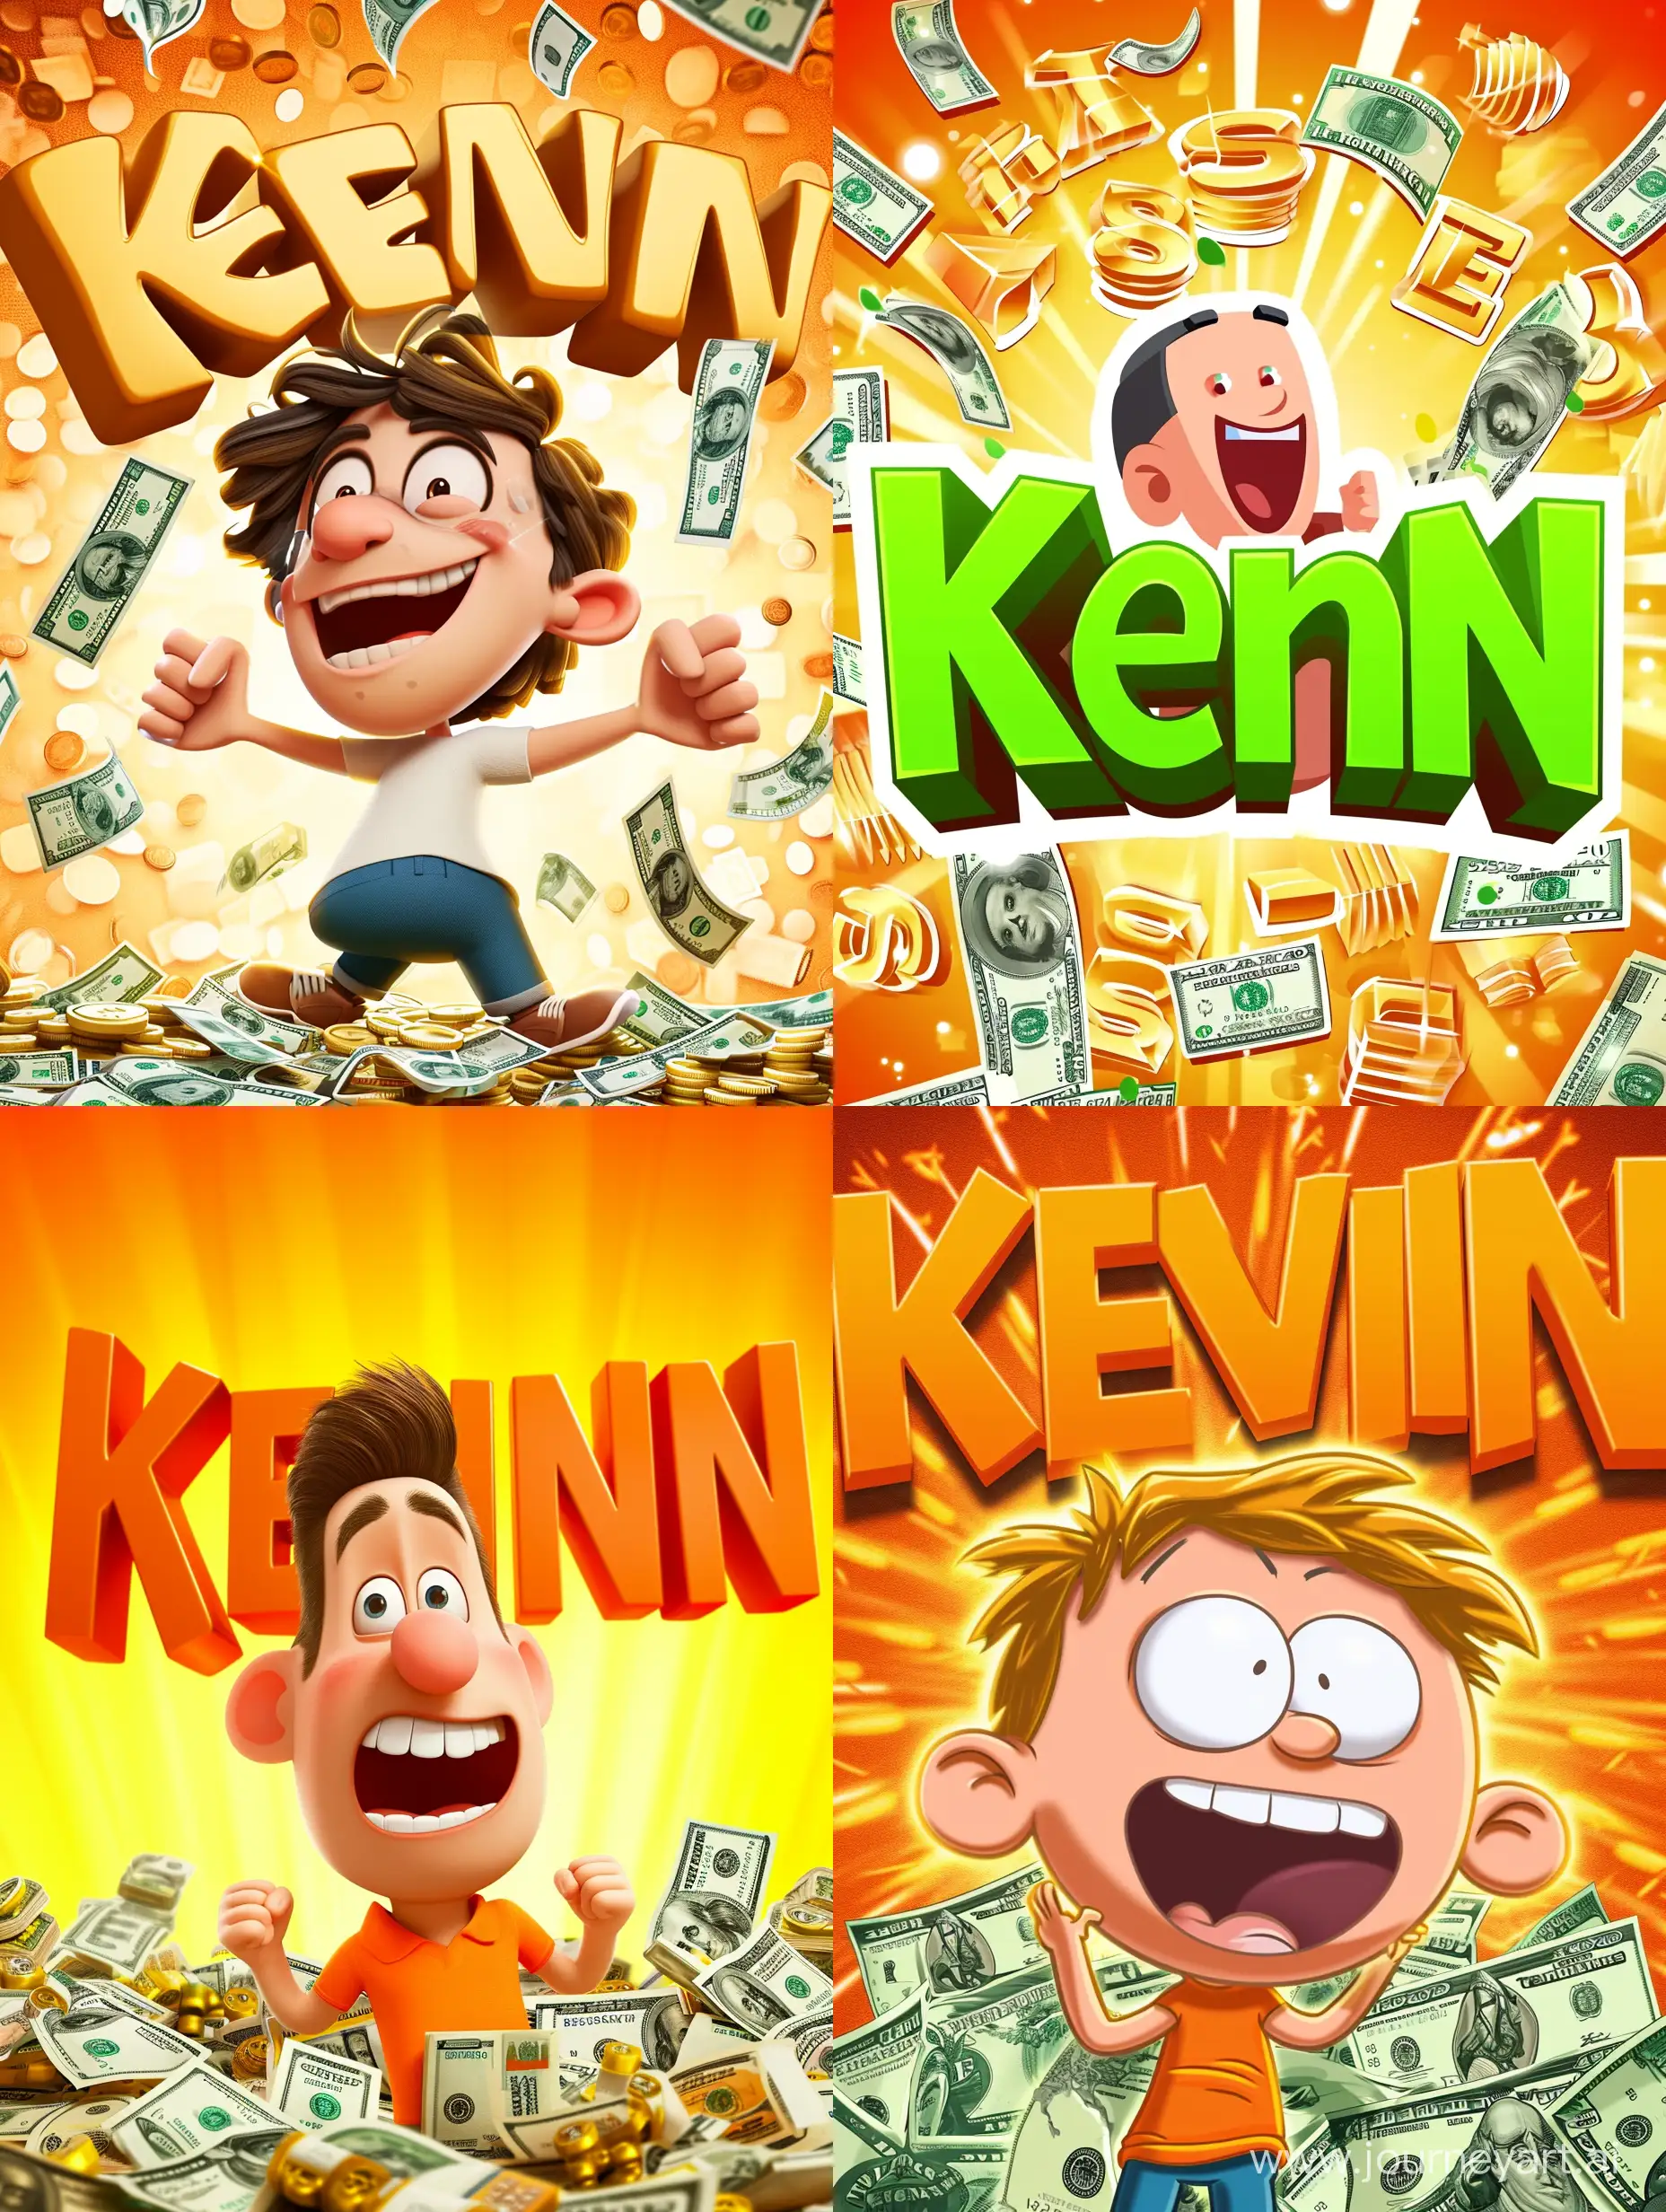 яркая картинка с персонажем, много денег, фон большие буквы "Kevin"